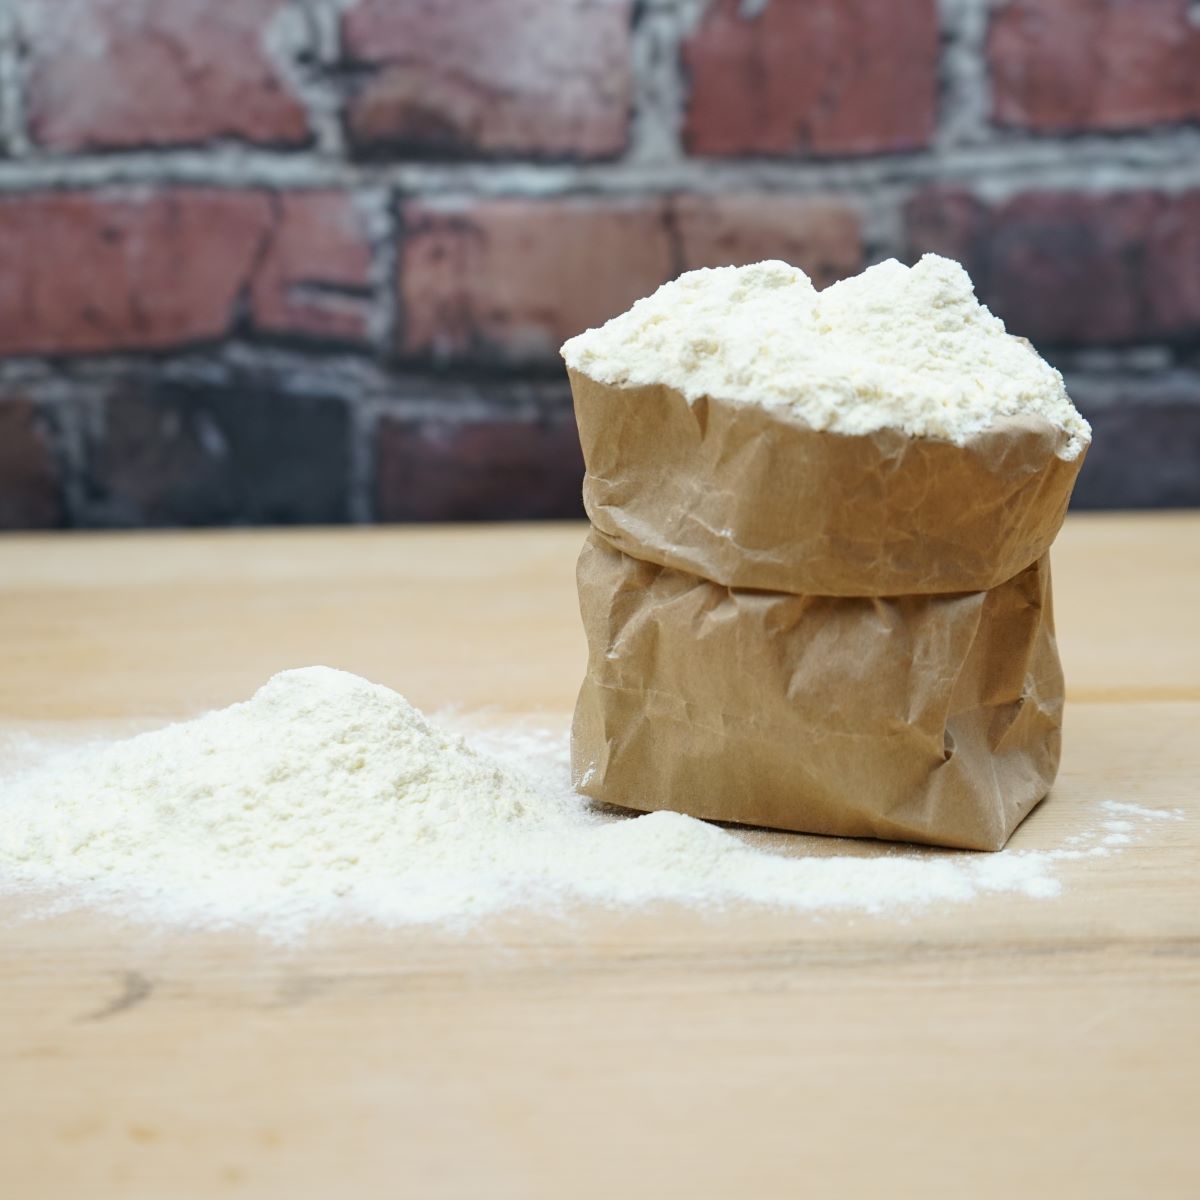 Maismehl 1 kg – Das Gold unter den Mehlsorten